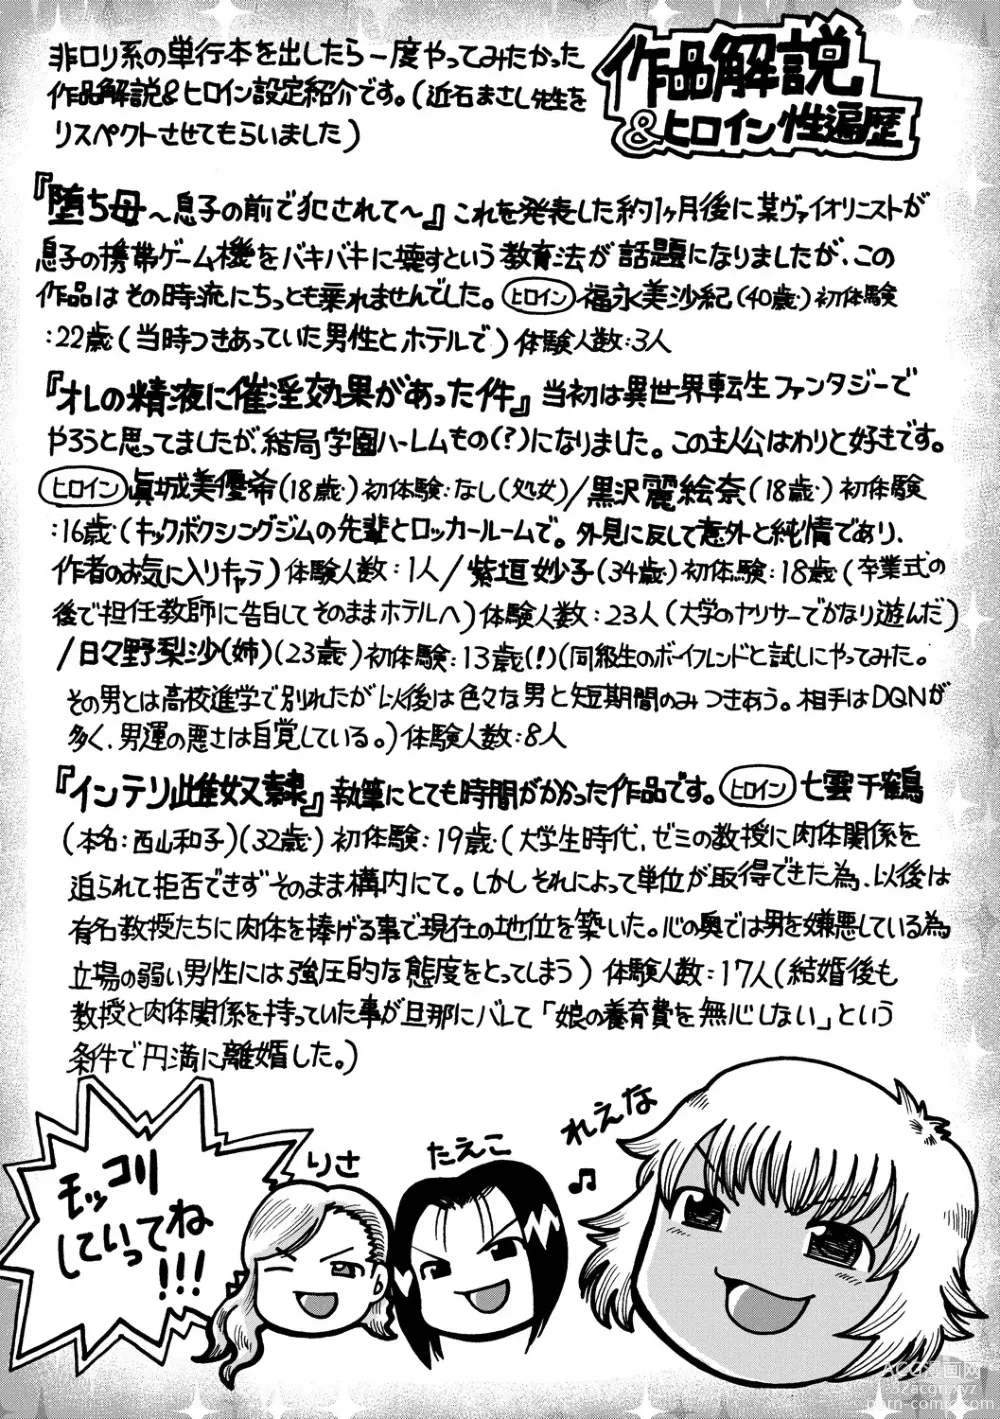 Page 191 of manga Kanojo wo Dorei ni Otoshitara